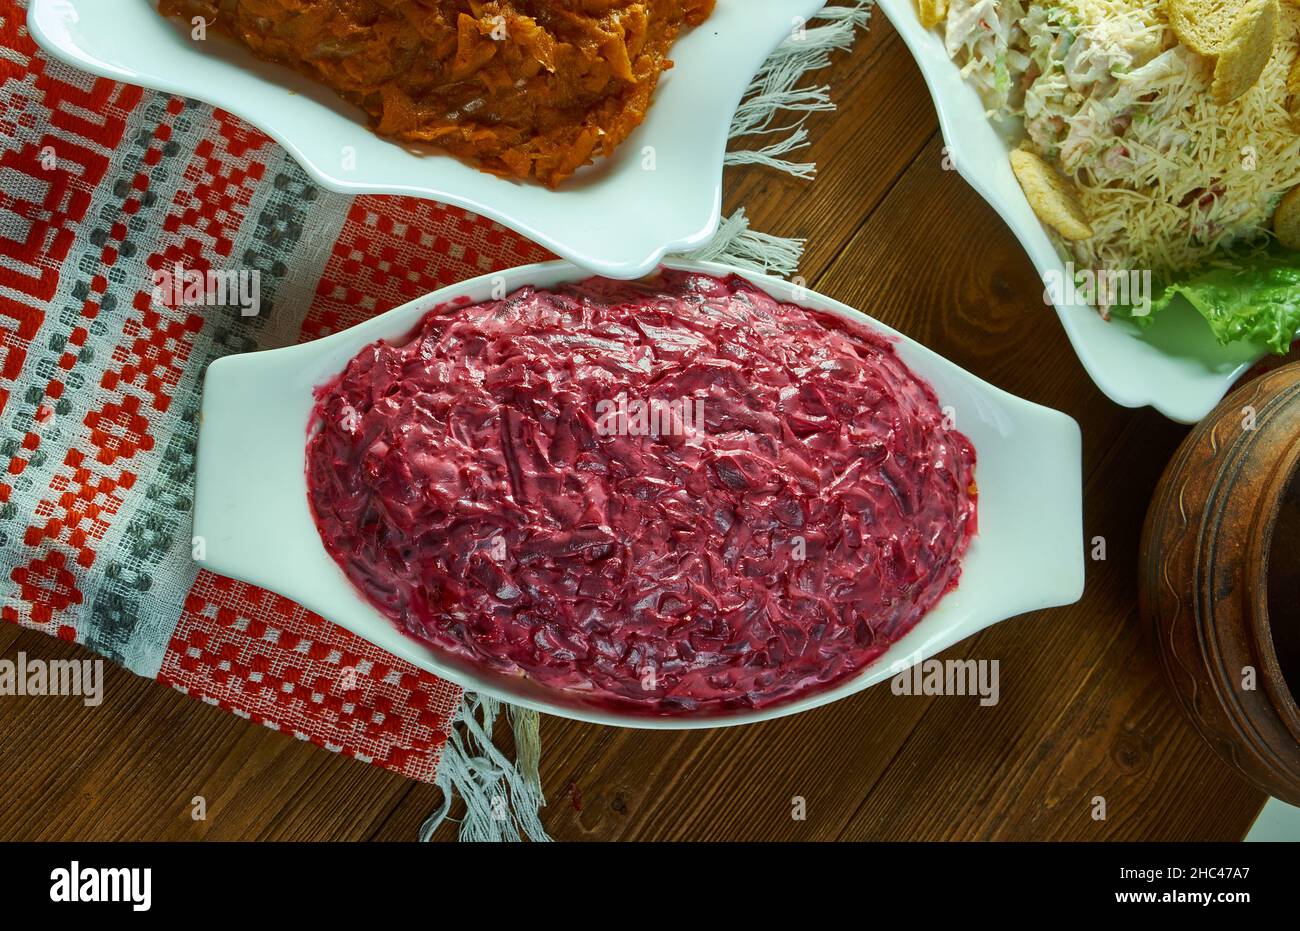 Salade de betteraves, de hareng pickled et de pommes de terre.Cuisine scandinave de Noël, assortiment de plats Banque D'Images